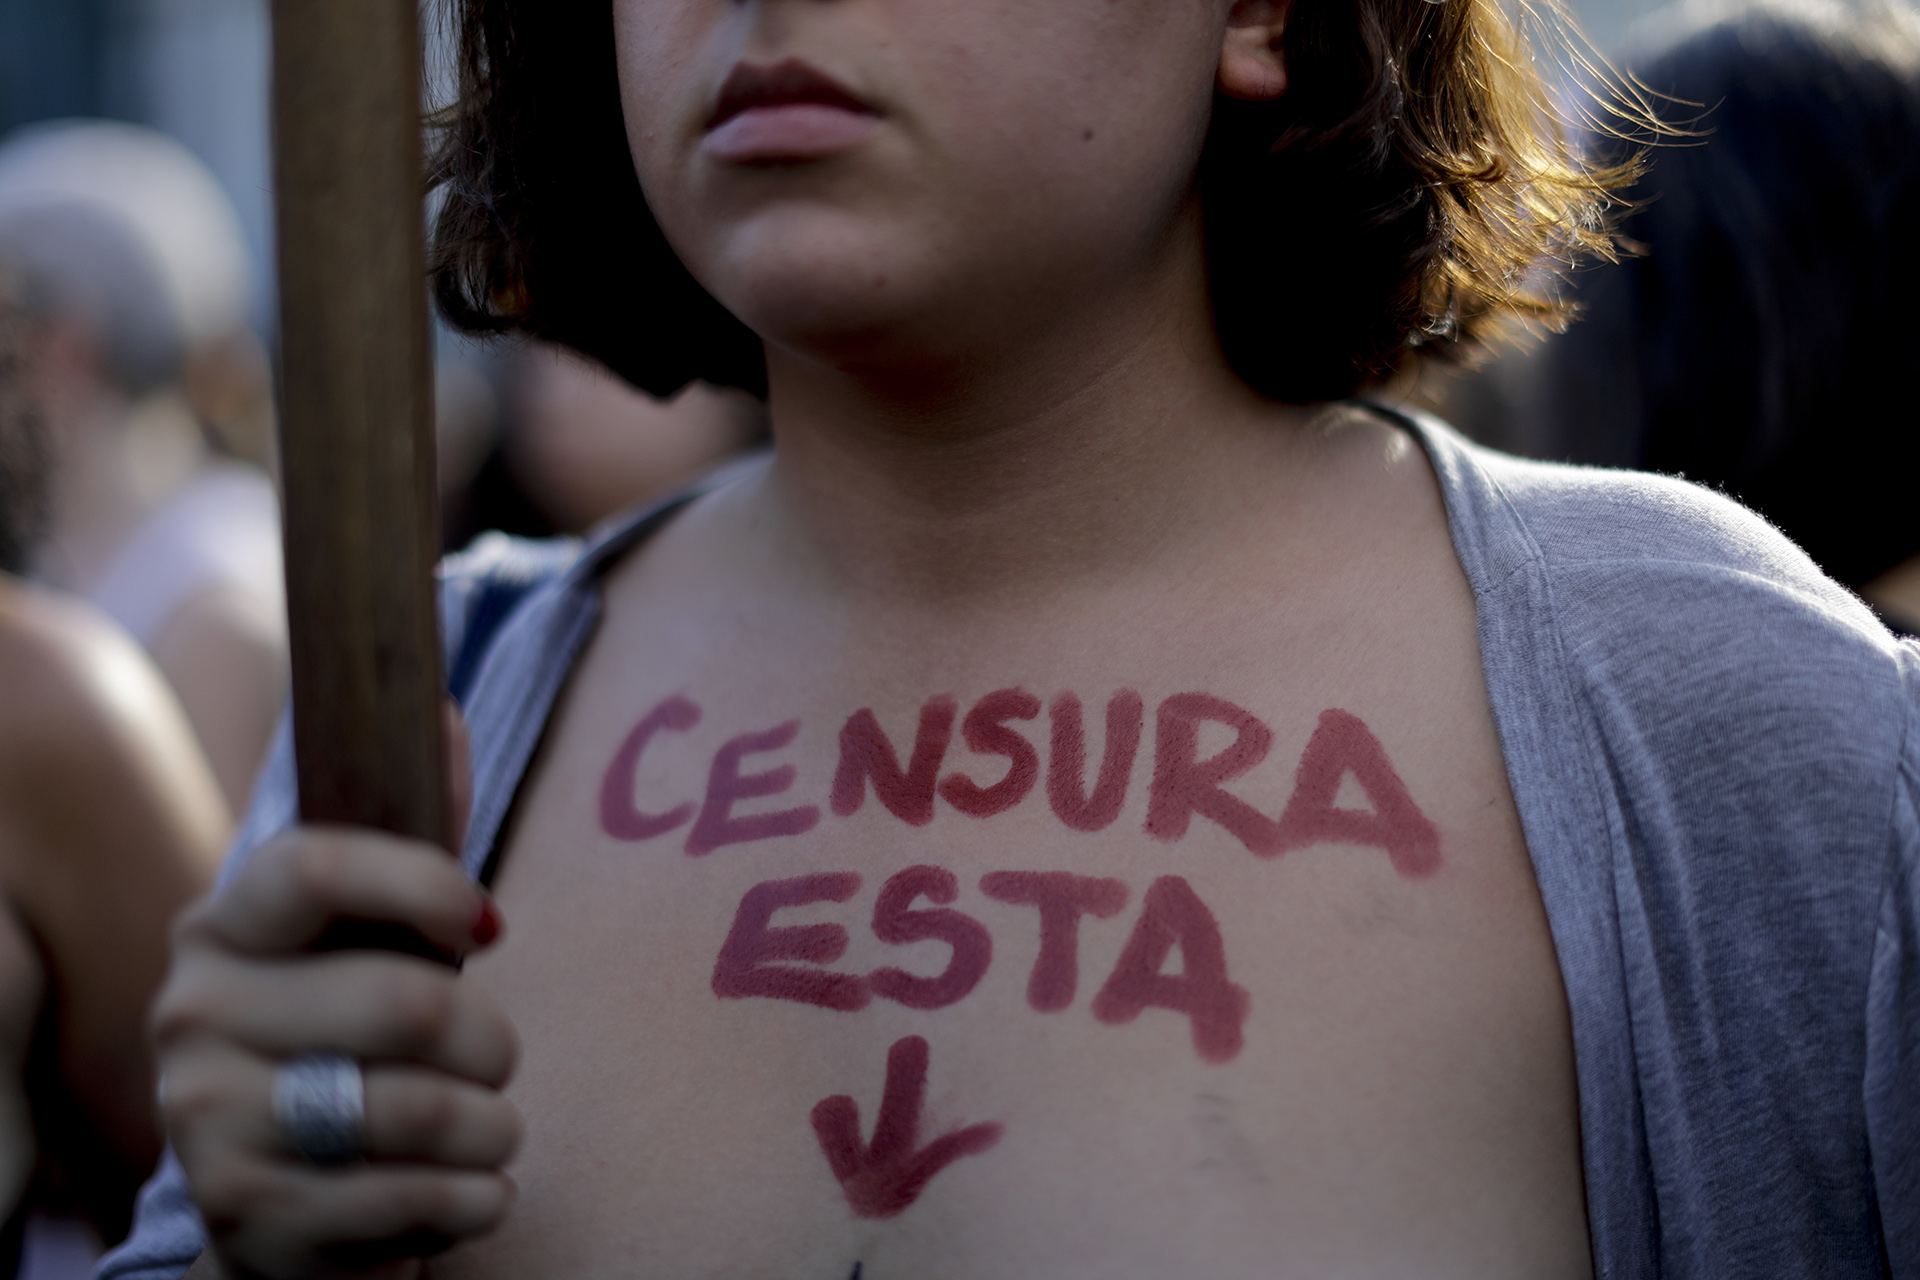 Las mujeres escribían en sus pechos desnudos frases contra la censura (Foto: Natacha Pisarenko/AP)